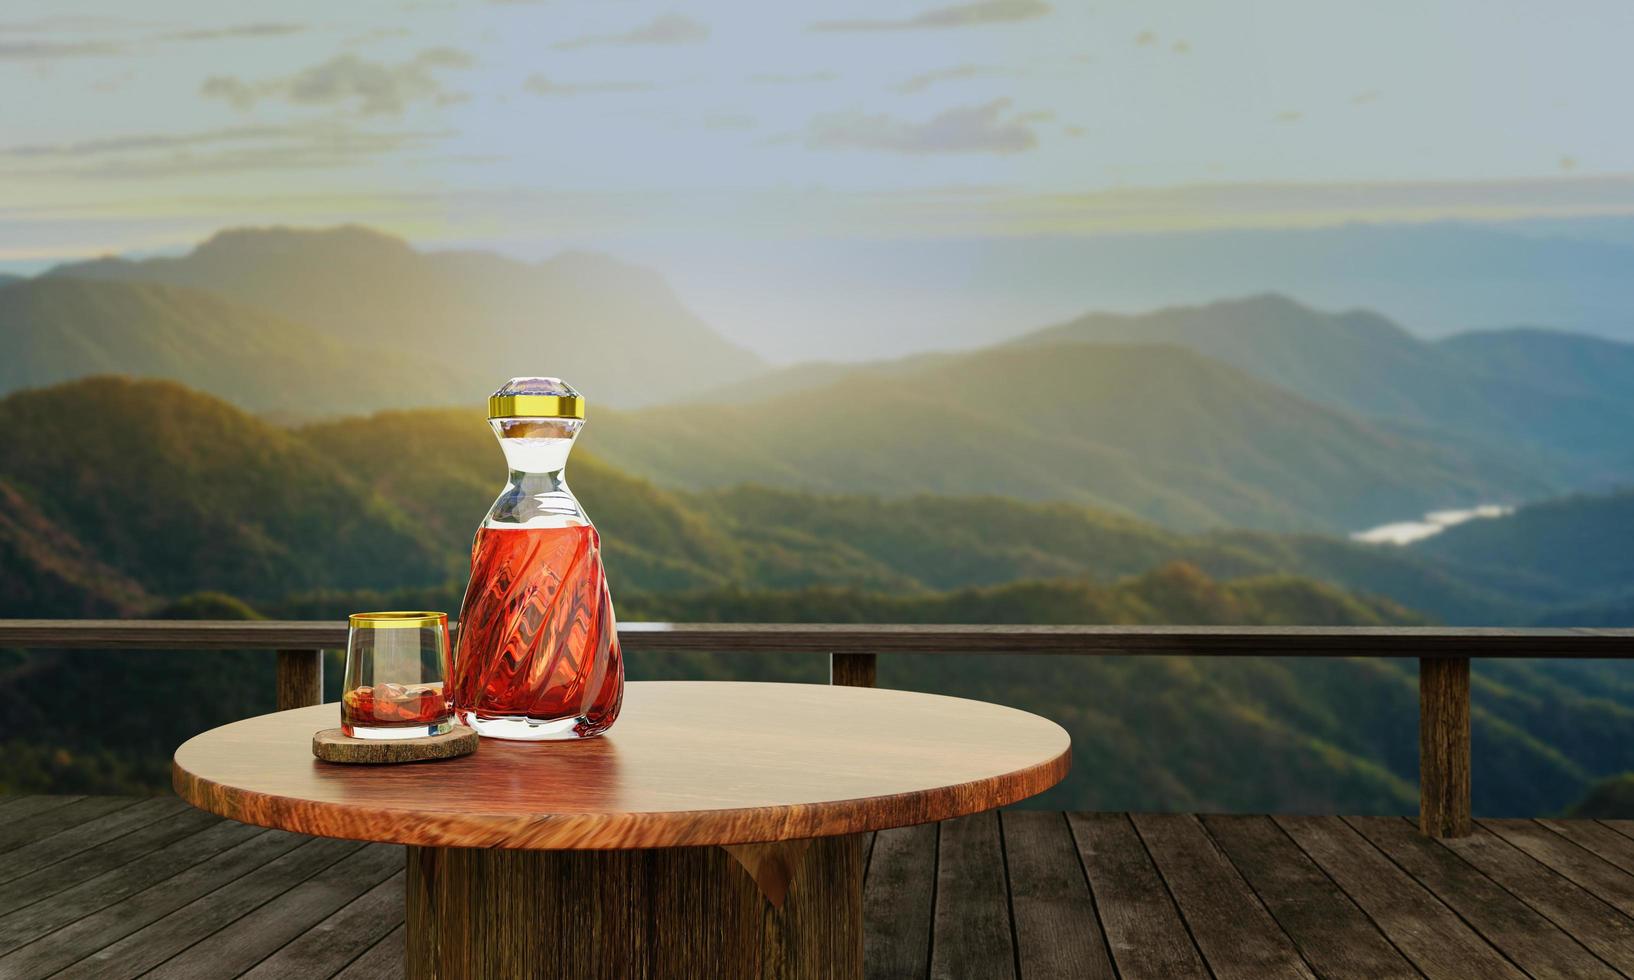 whisky o brandy in una bottiglia trasparente con un design a spirale e un bicchiere trasparente posizionato su corteccia d'albero o corteccia d'albero. paesaggio con paesaggi di pini e montagne al mattino. il Sole sta sorgendo. rendering 3D foto